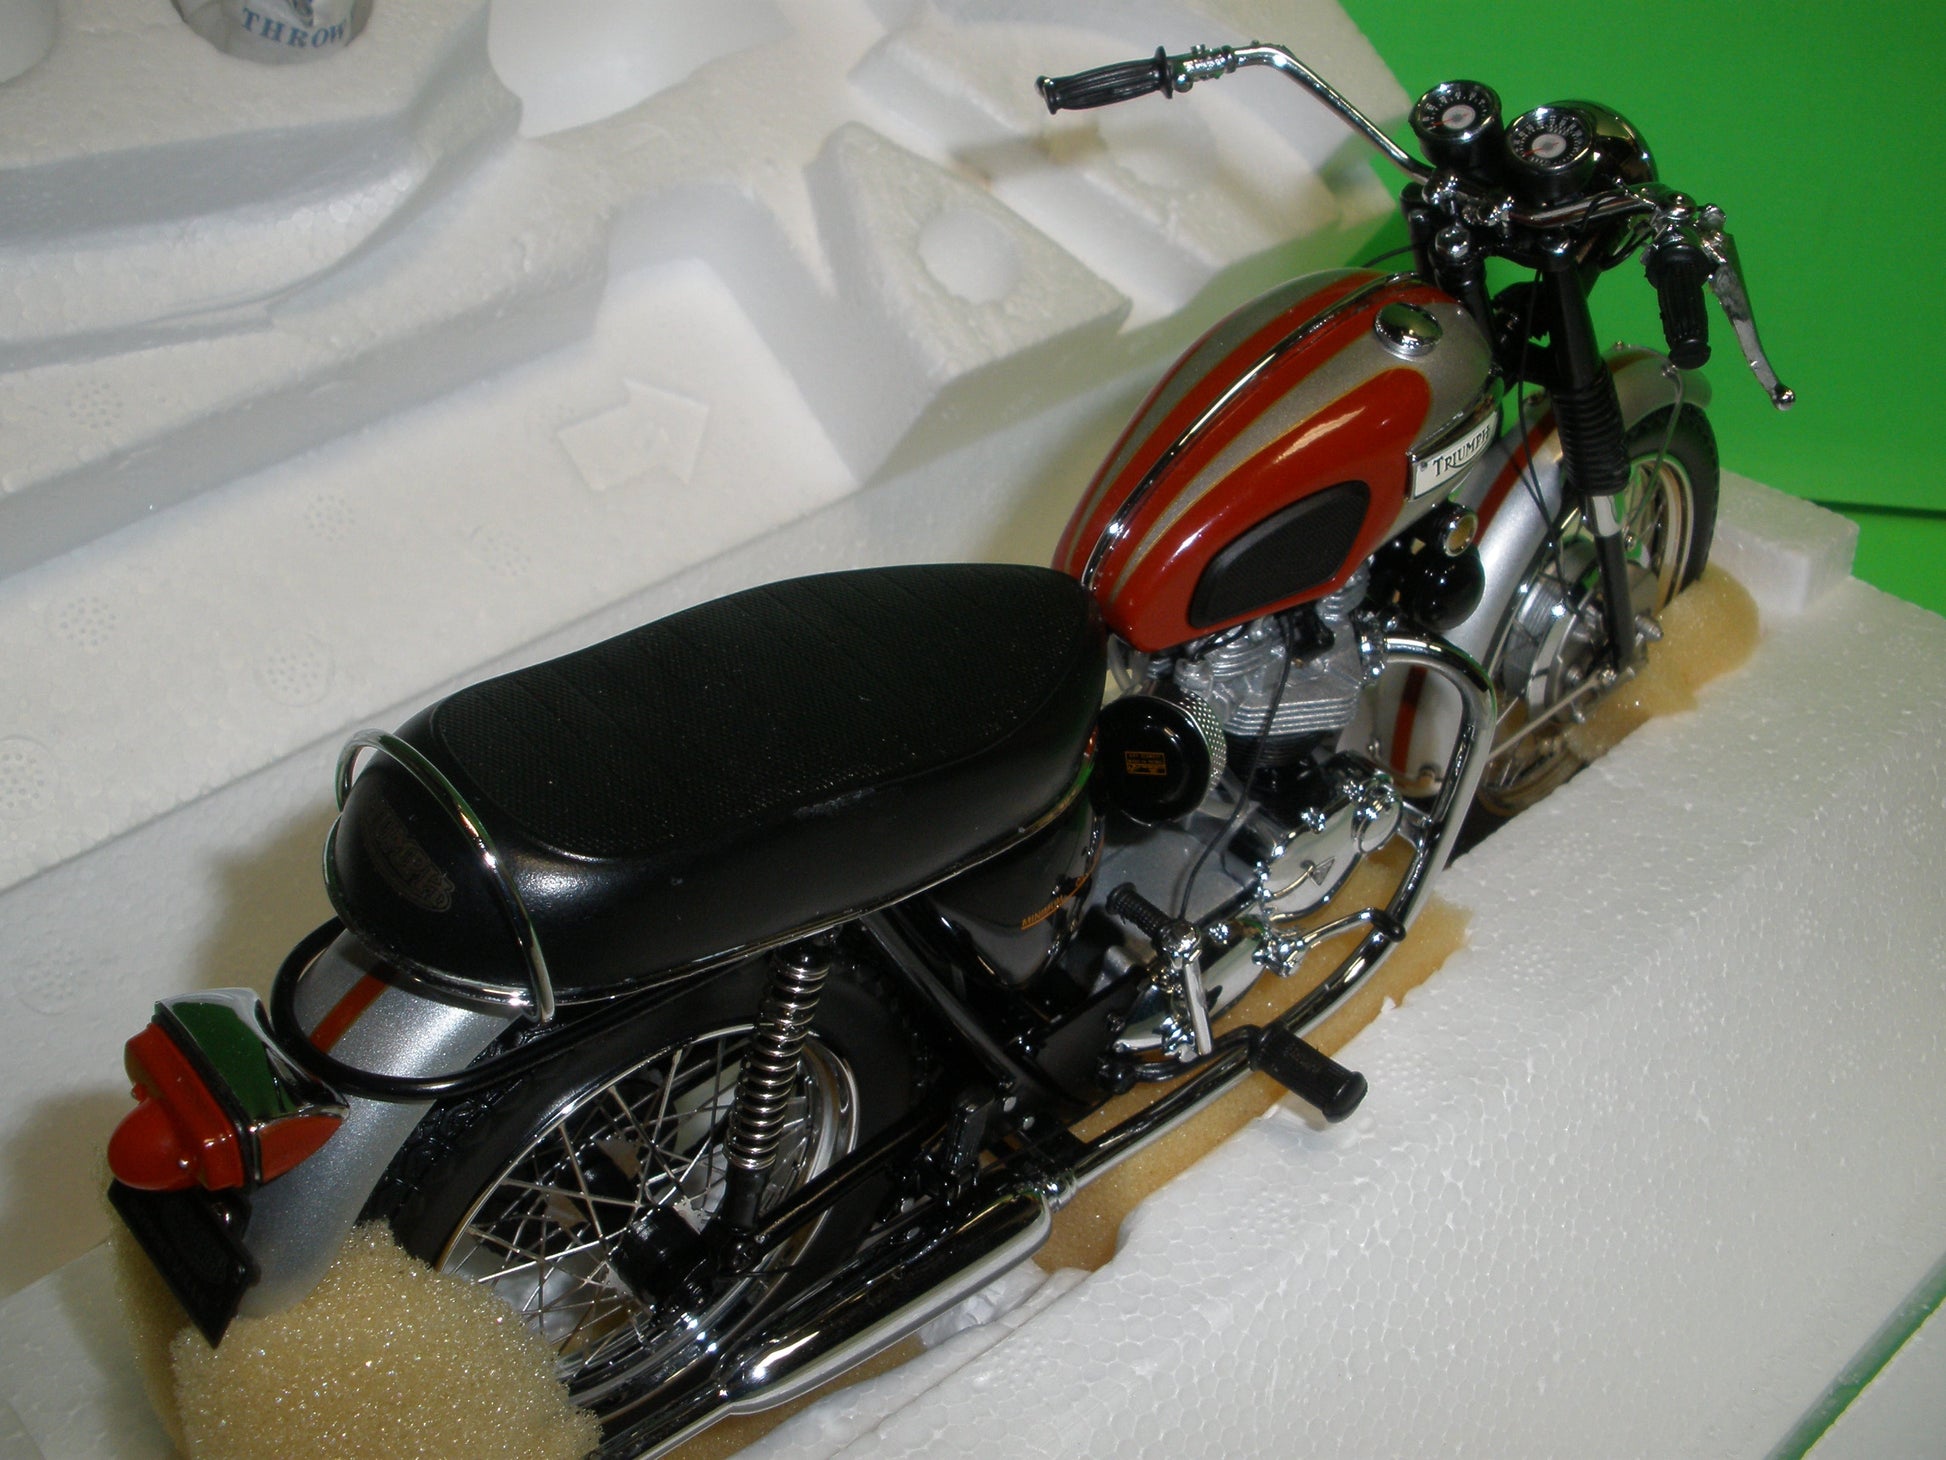 1969 Triumph Bonneville Motorcycle - B11XN71